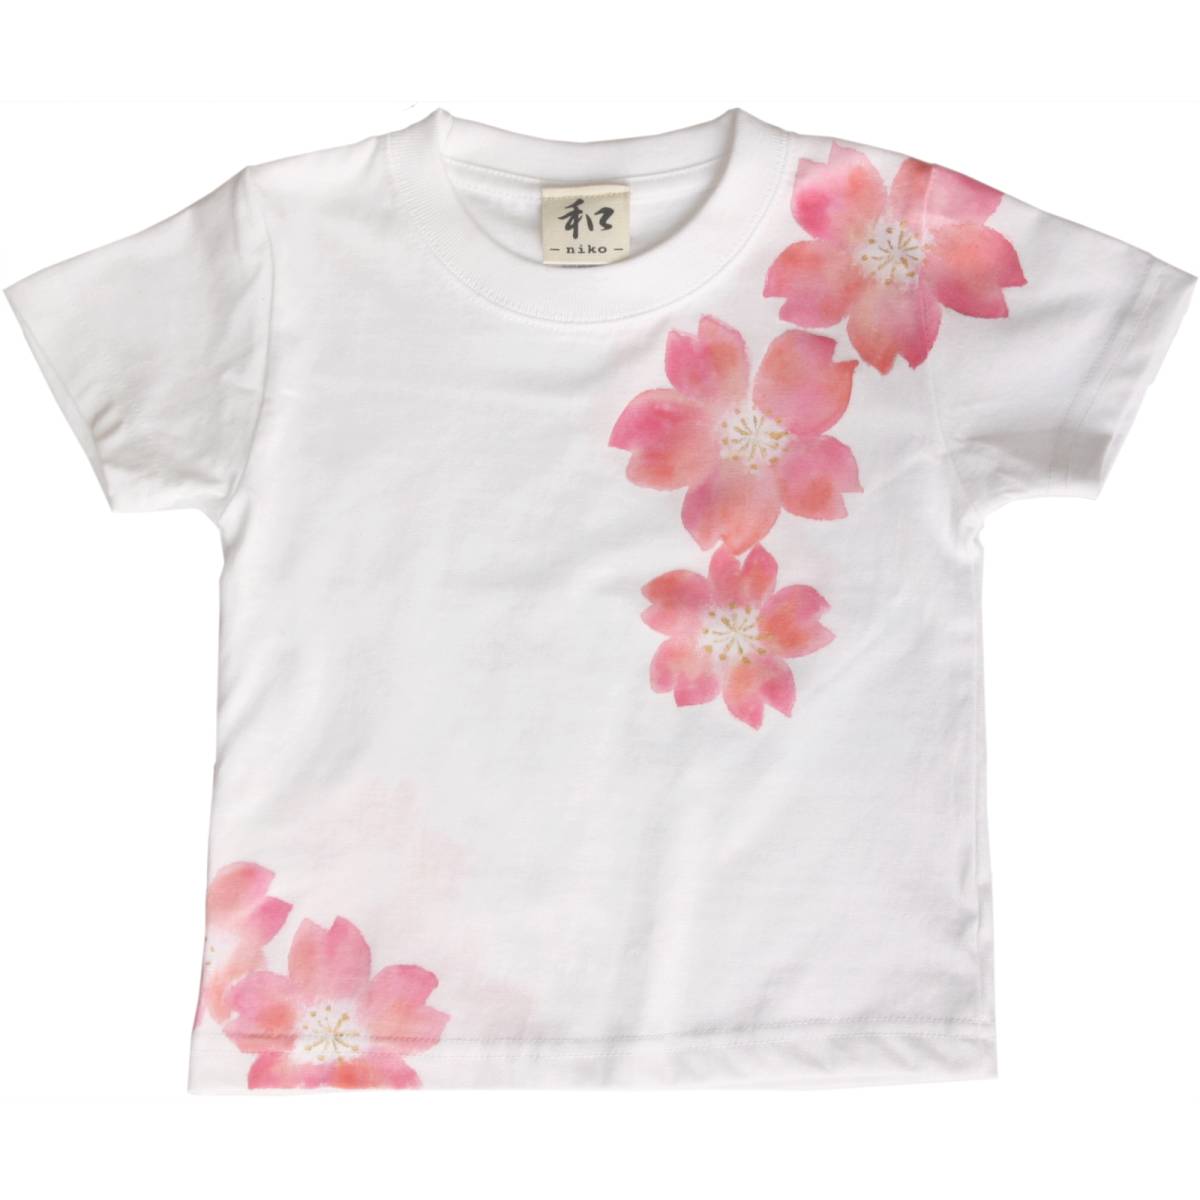 बच्चों के कपड़े बच्चों की टी-शर्ट आकार 90 सफेद डांस चेरी ब्लॉसम पैटर्न टी-शर्ट हस्तनिर्मित हाथ से पेंट की गई टी-शर्ट जापानी पैटर्न स्प्रिंग व्हाइट, आधी बाजू, लड़कियों के लिए, 90(85~94 सेमी)